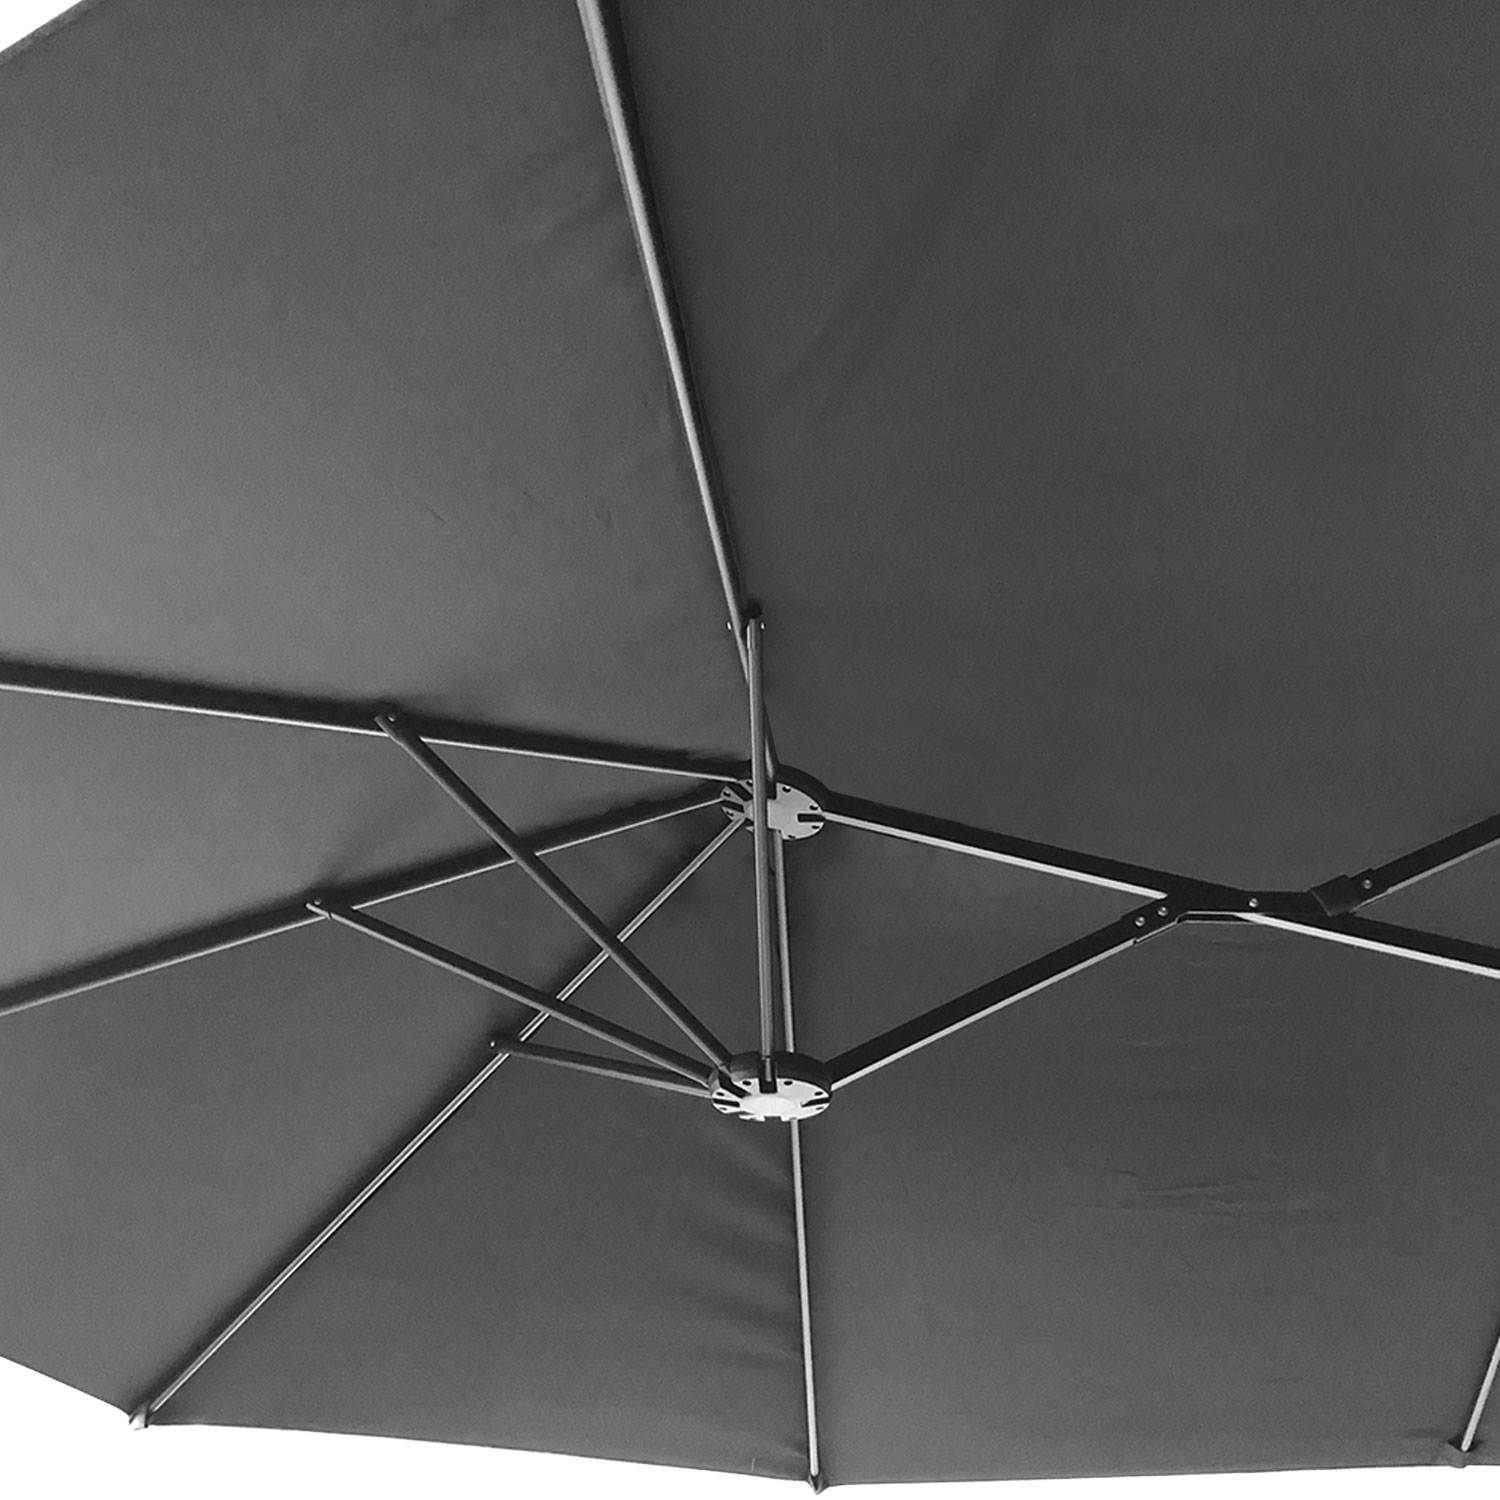 Dubbele paraplu 2x4m LINAI grijs